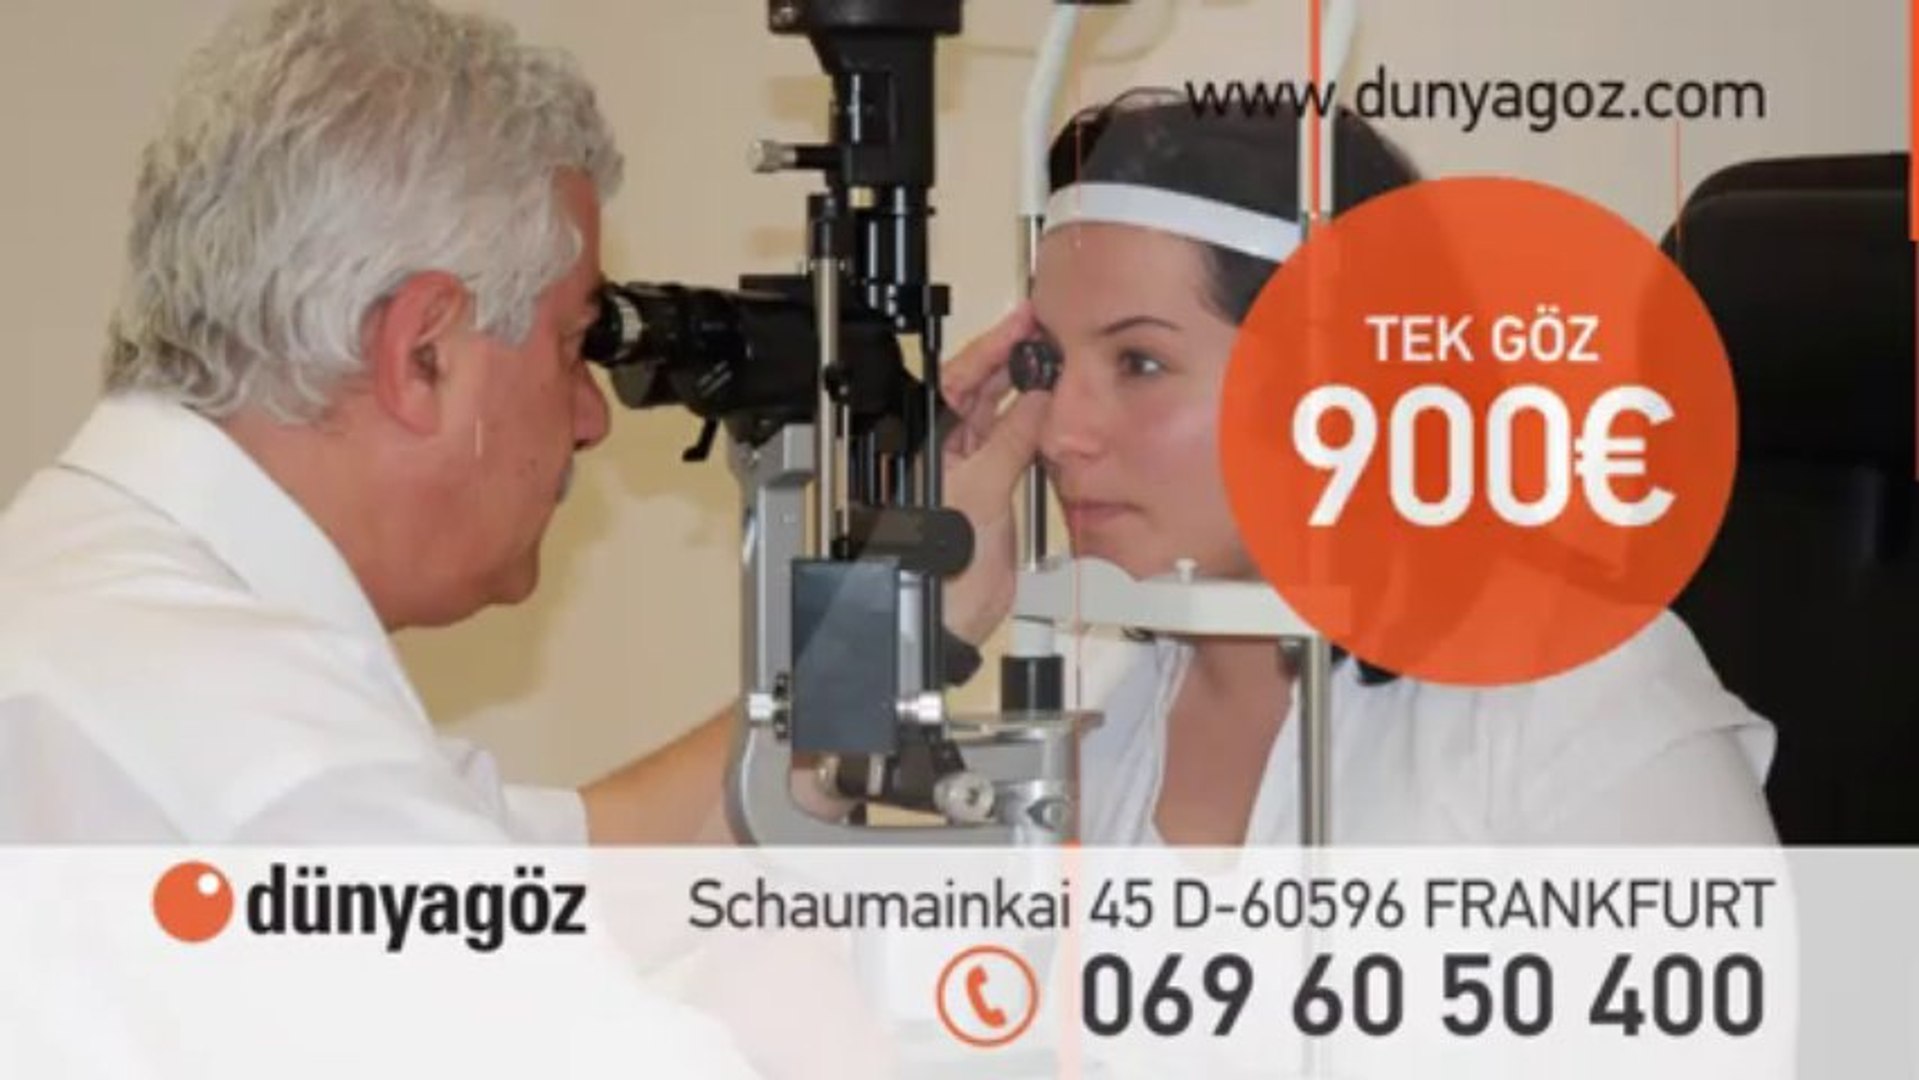 Dunyagoz Hastanesi Frankfurt Sube Kurumsal Reklam Filmi 2014 Dunyagoz Dailymotion Video